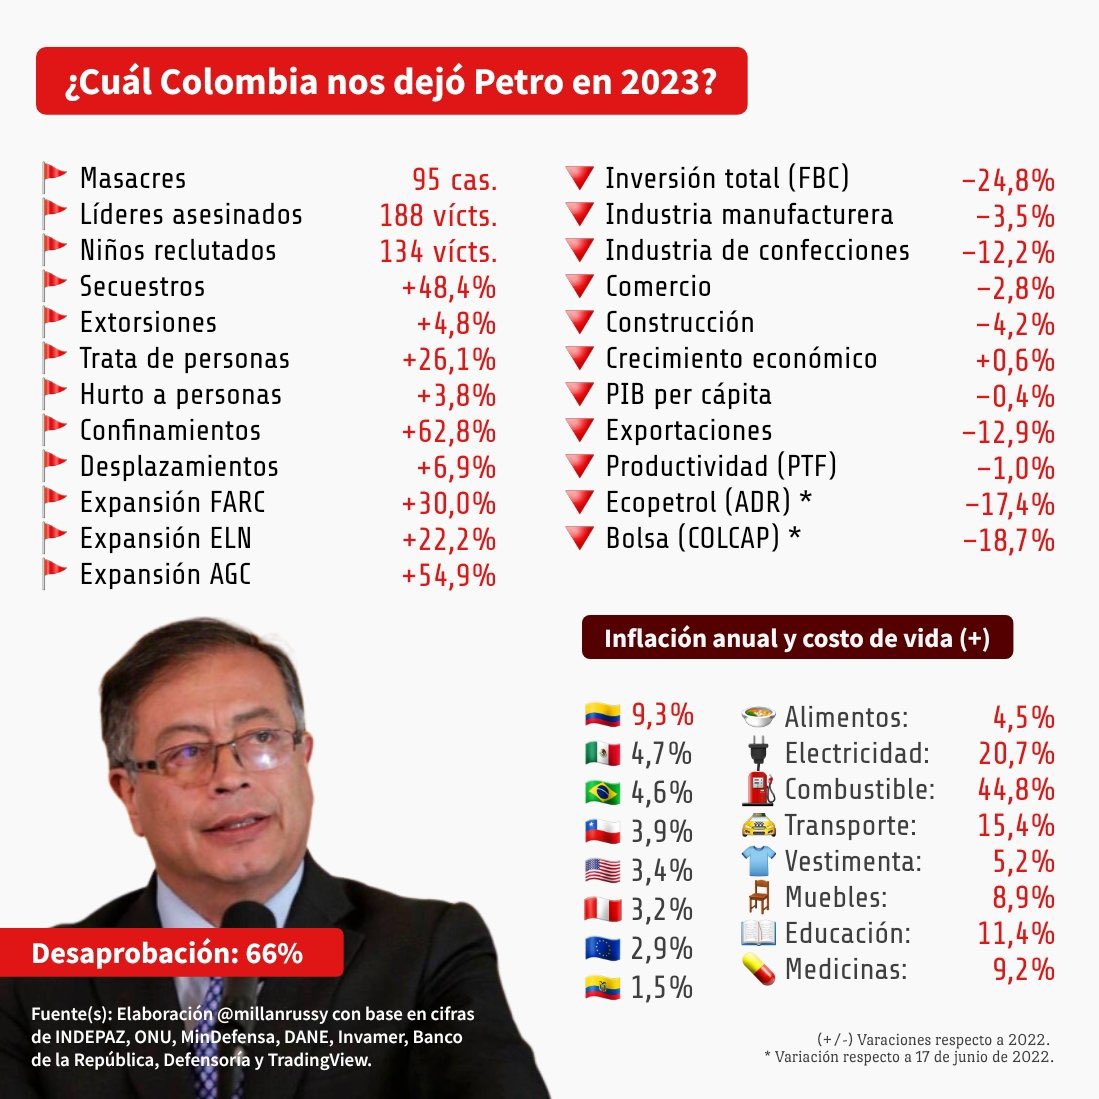 #ColombiaVaBien 

🤡 

Va bien mal.